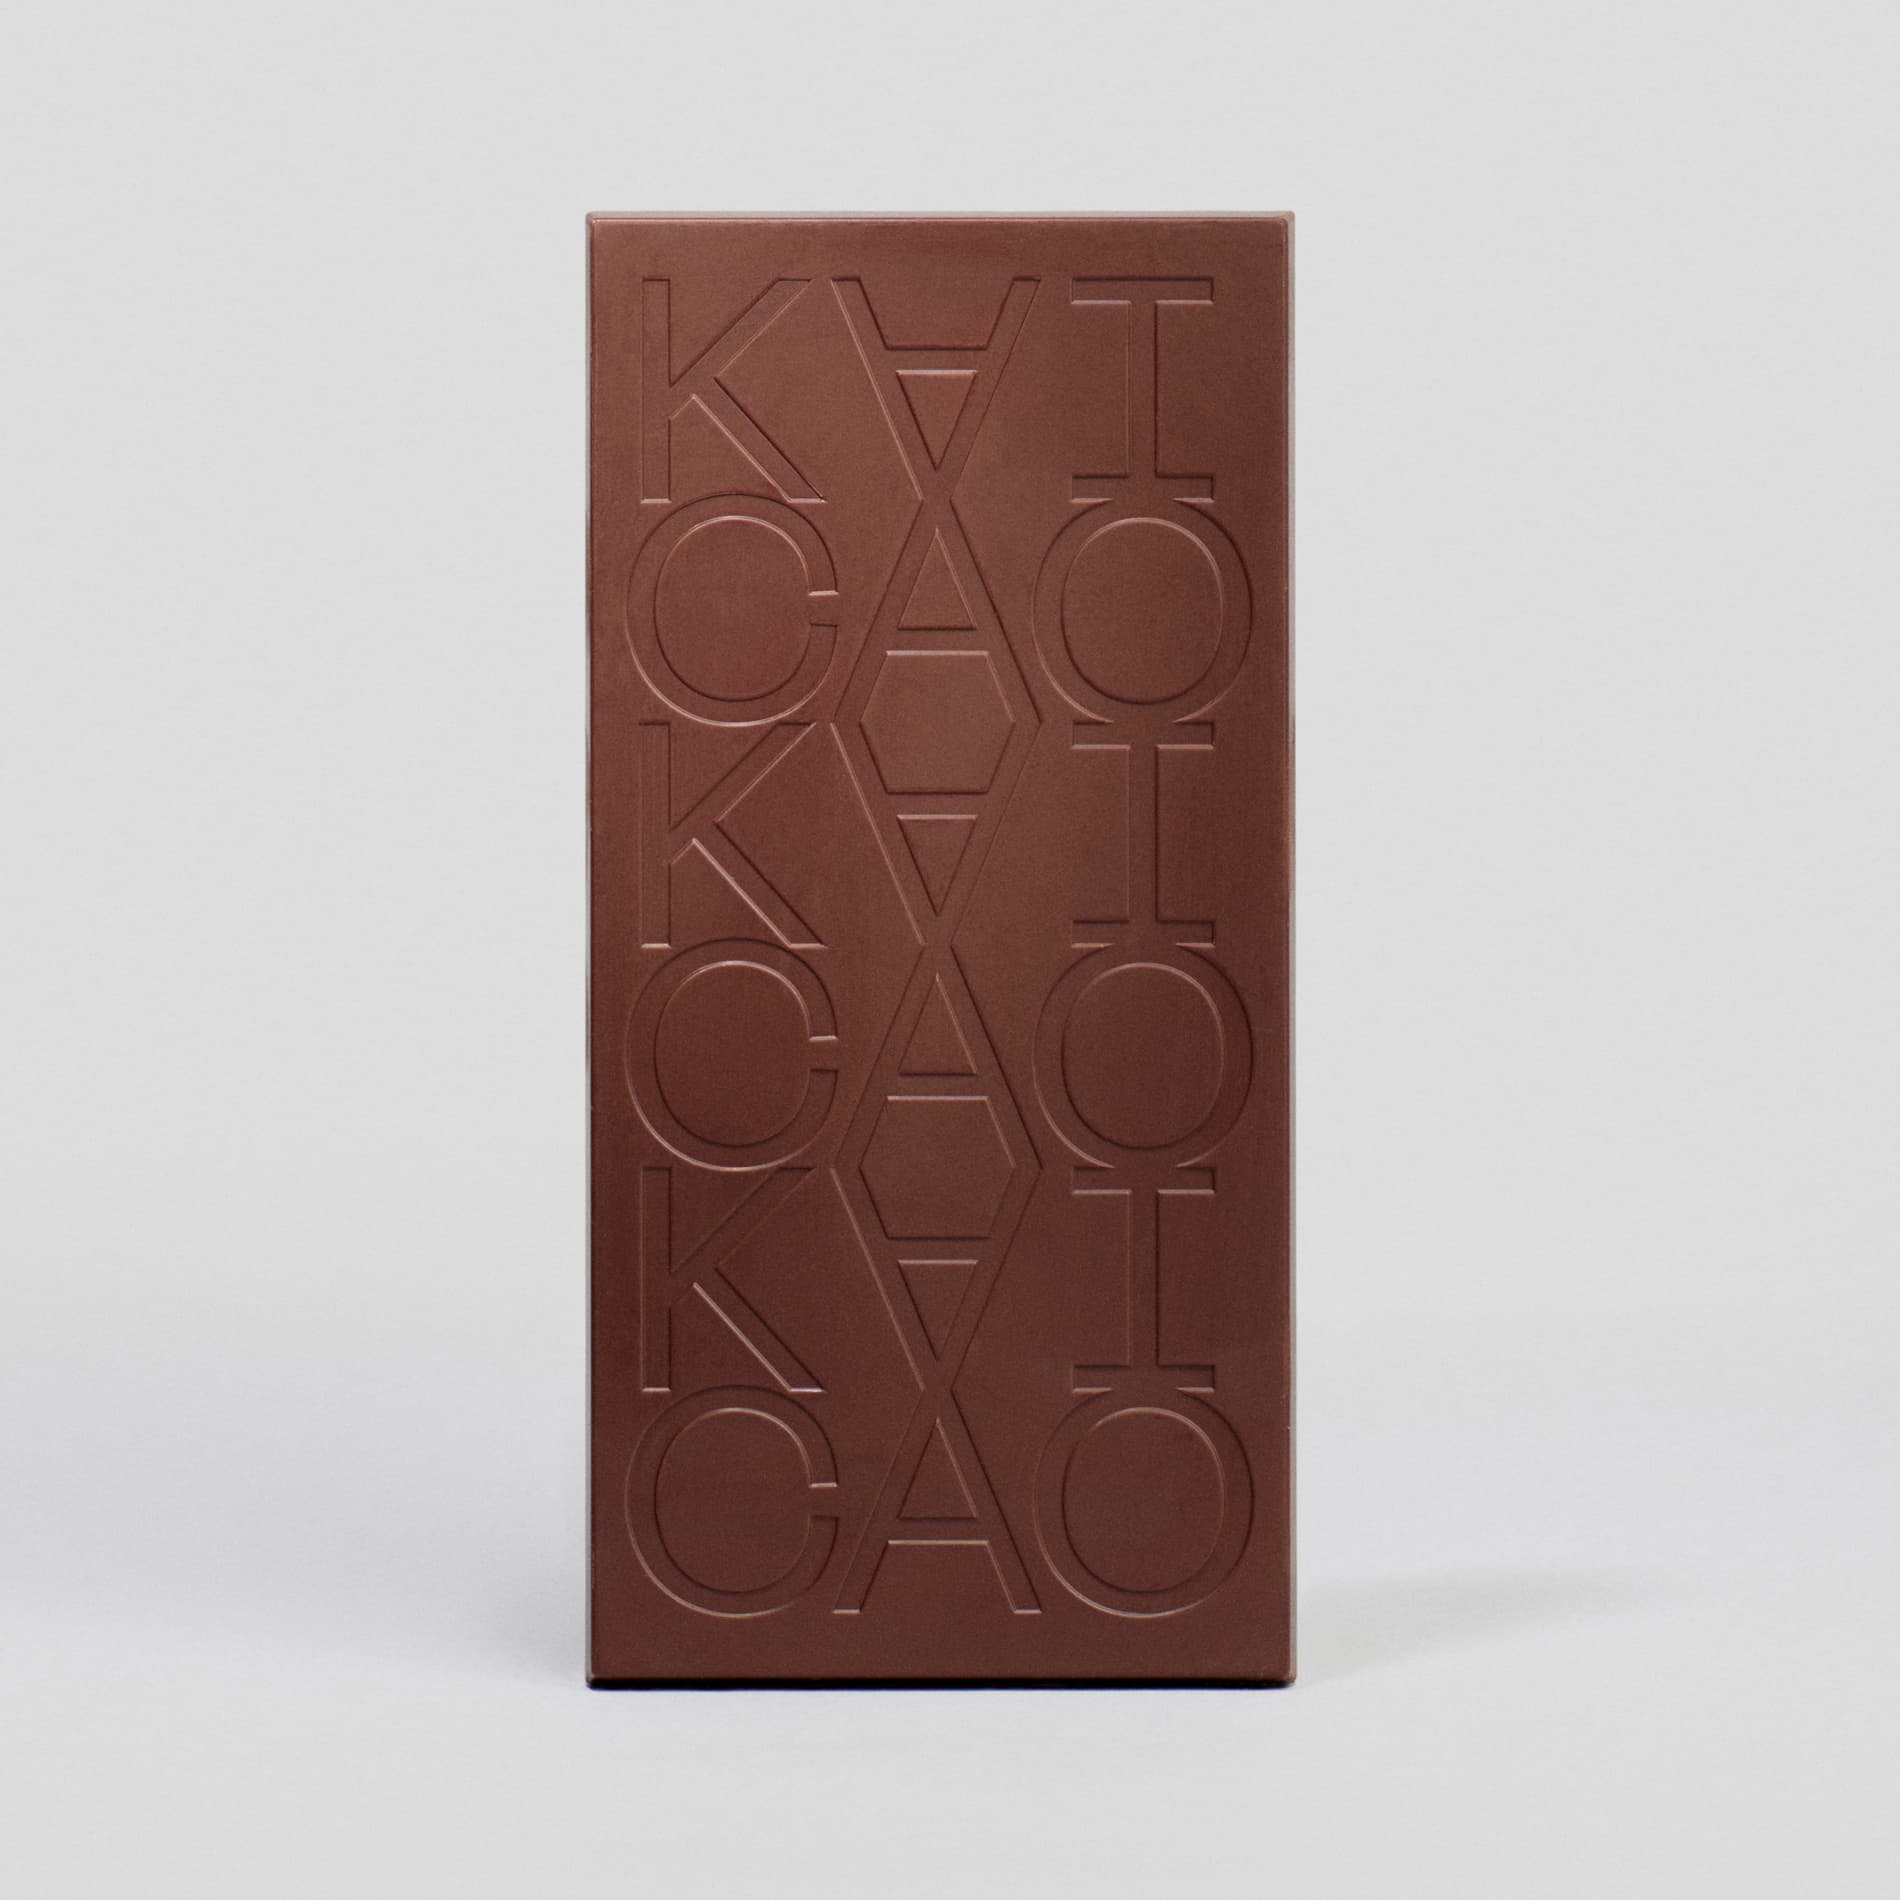 85% Dark Chocolate, Piura, Peru